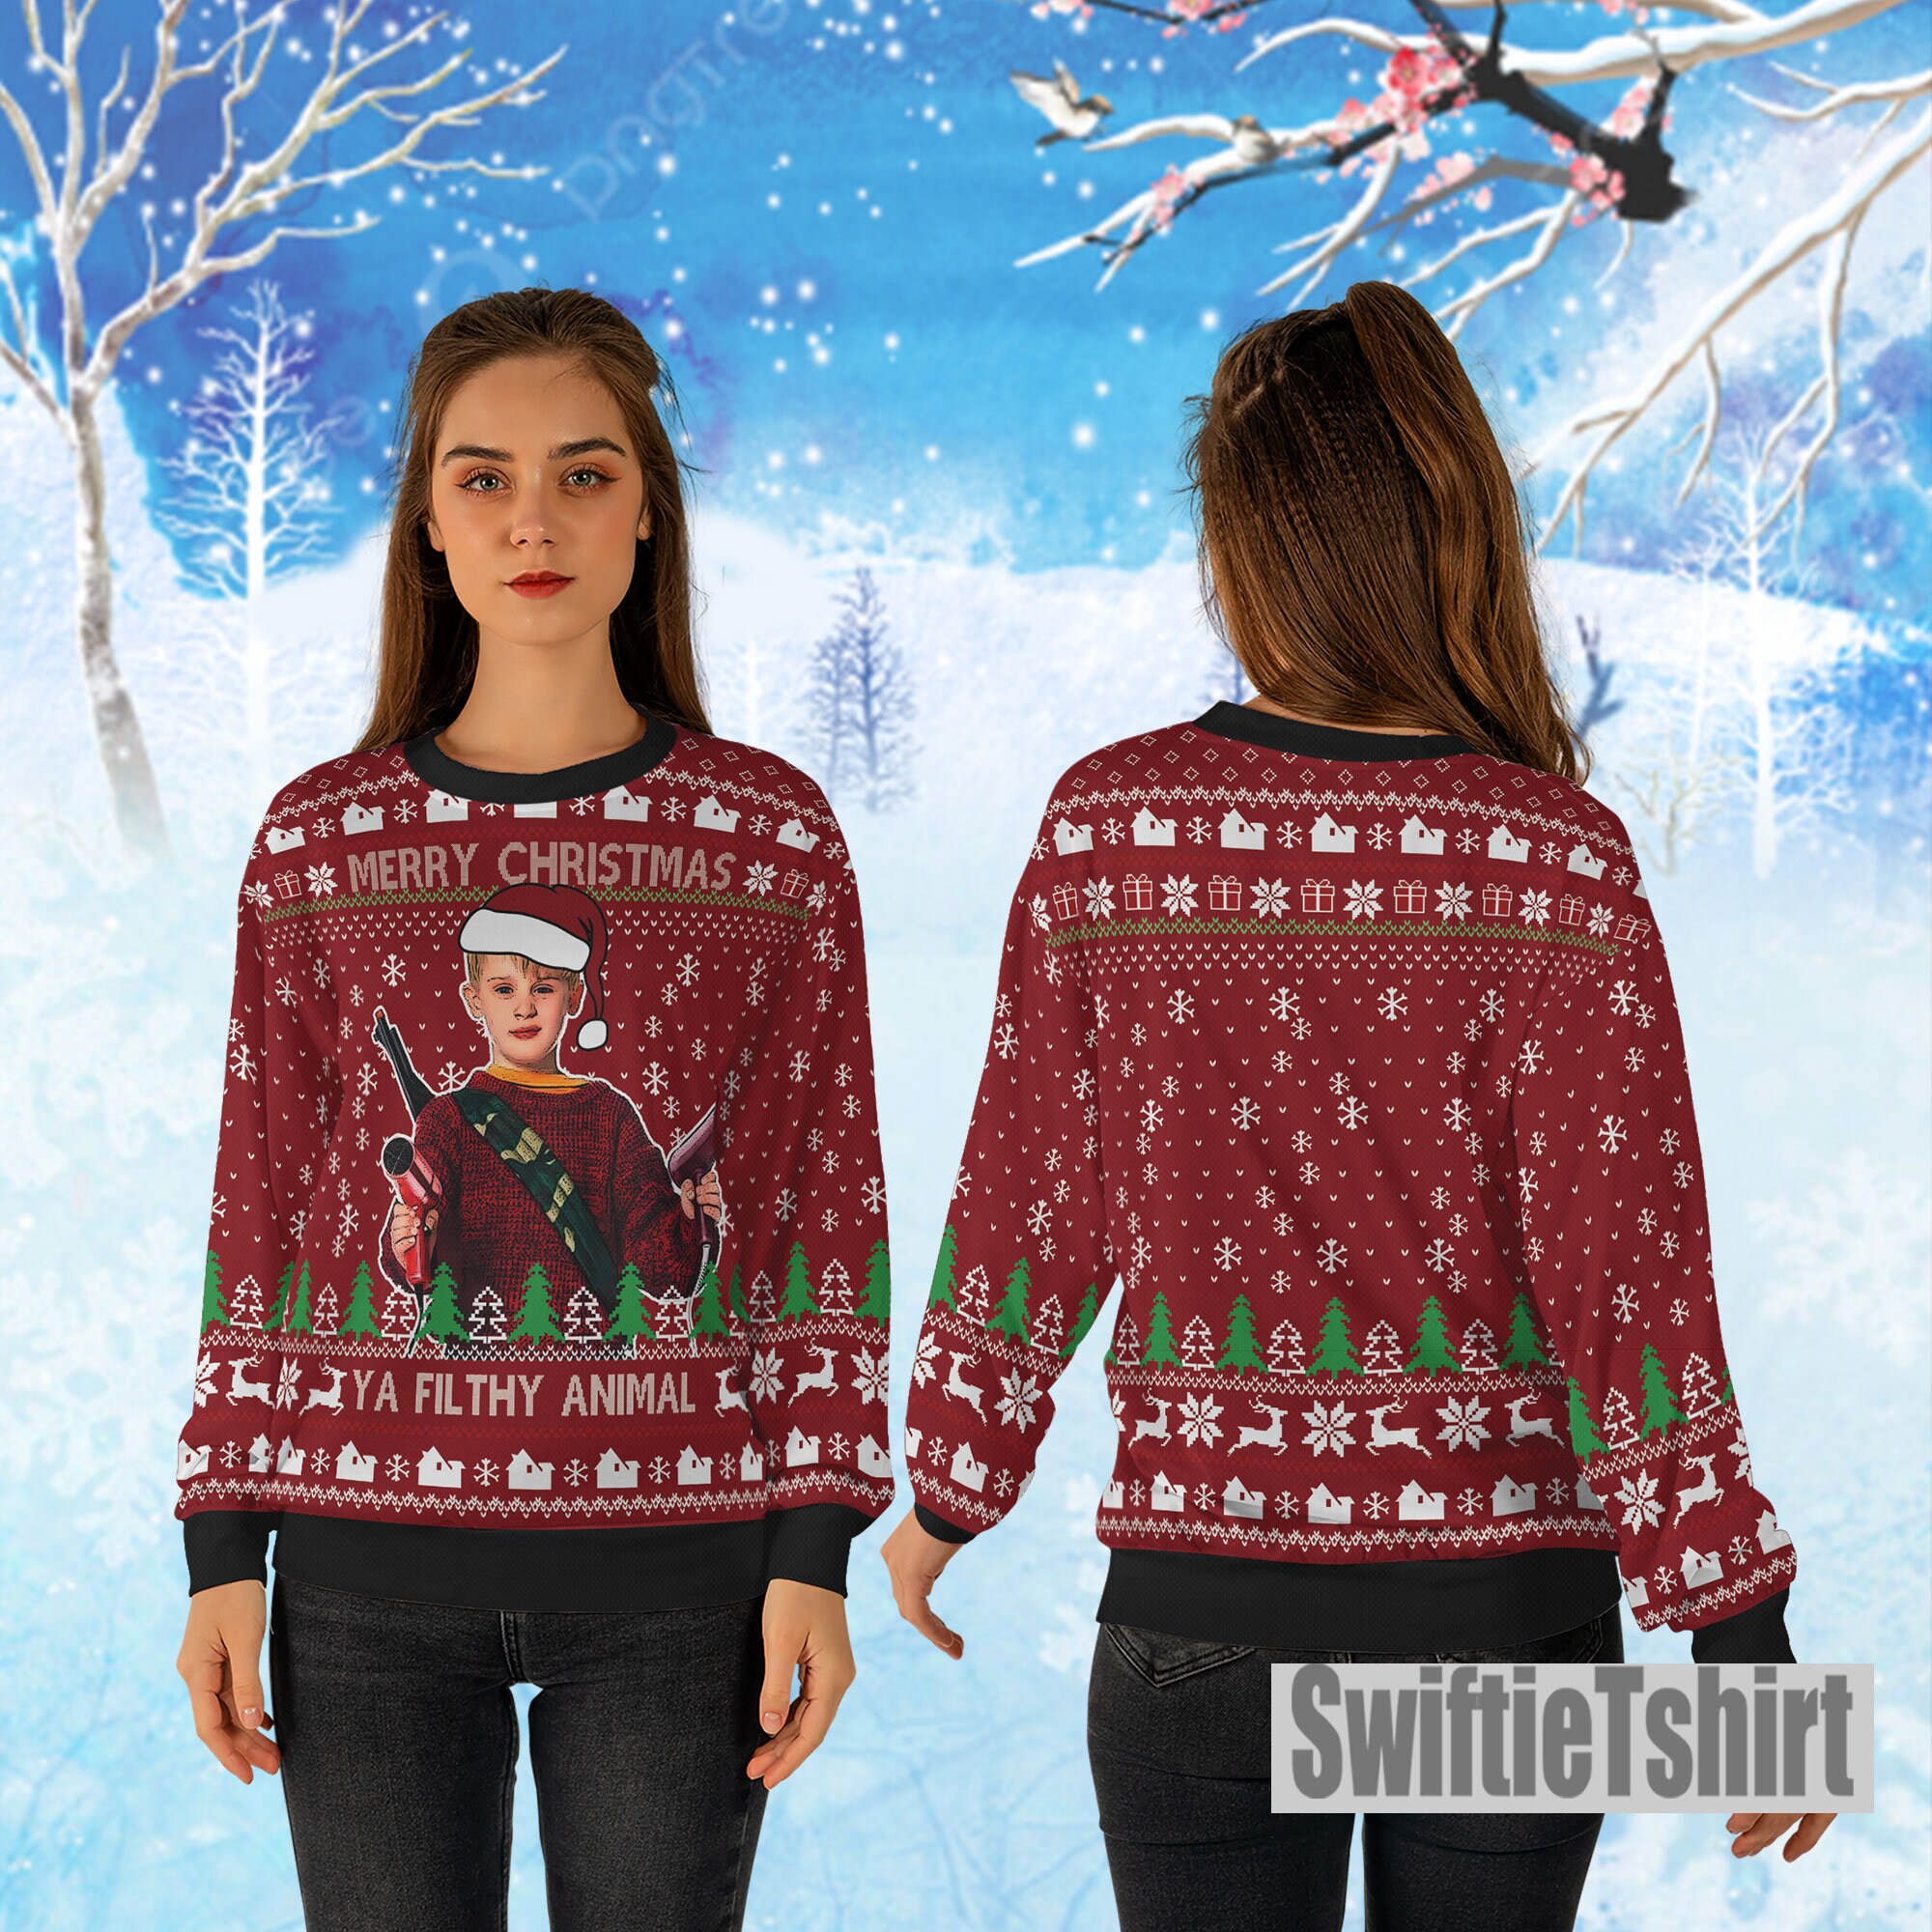 Discover Merry Christmas Ya Filthy Animal Home Alone Ugly Christmas Sweater, Home Alone Ugly Sweater Gift For Christmas, All Over Print Sweater